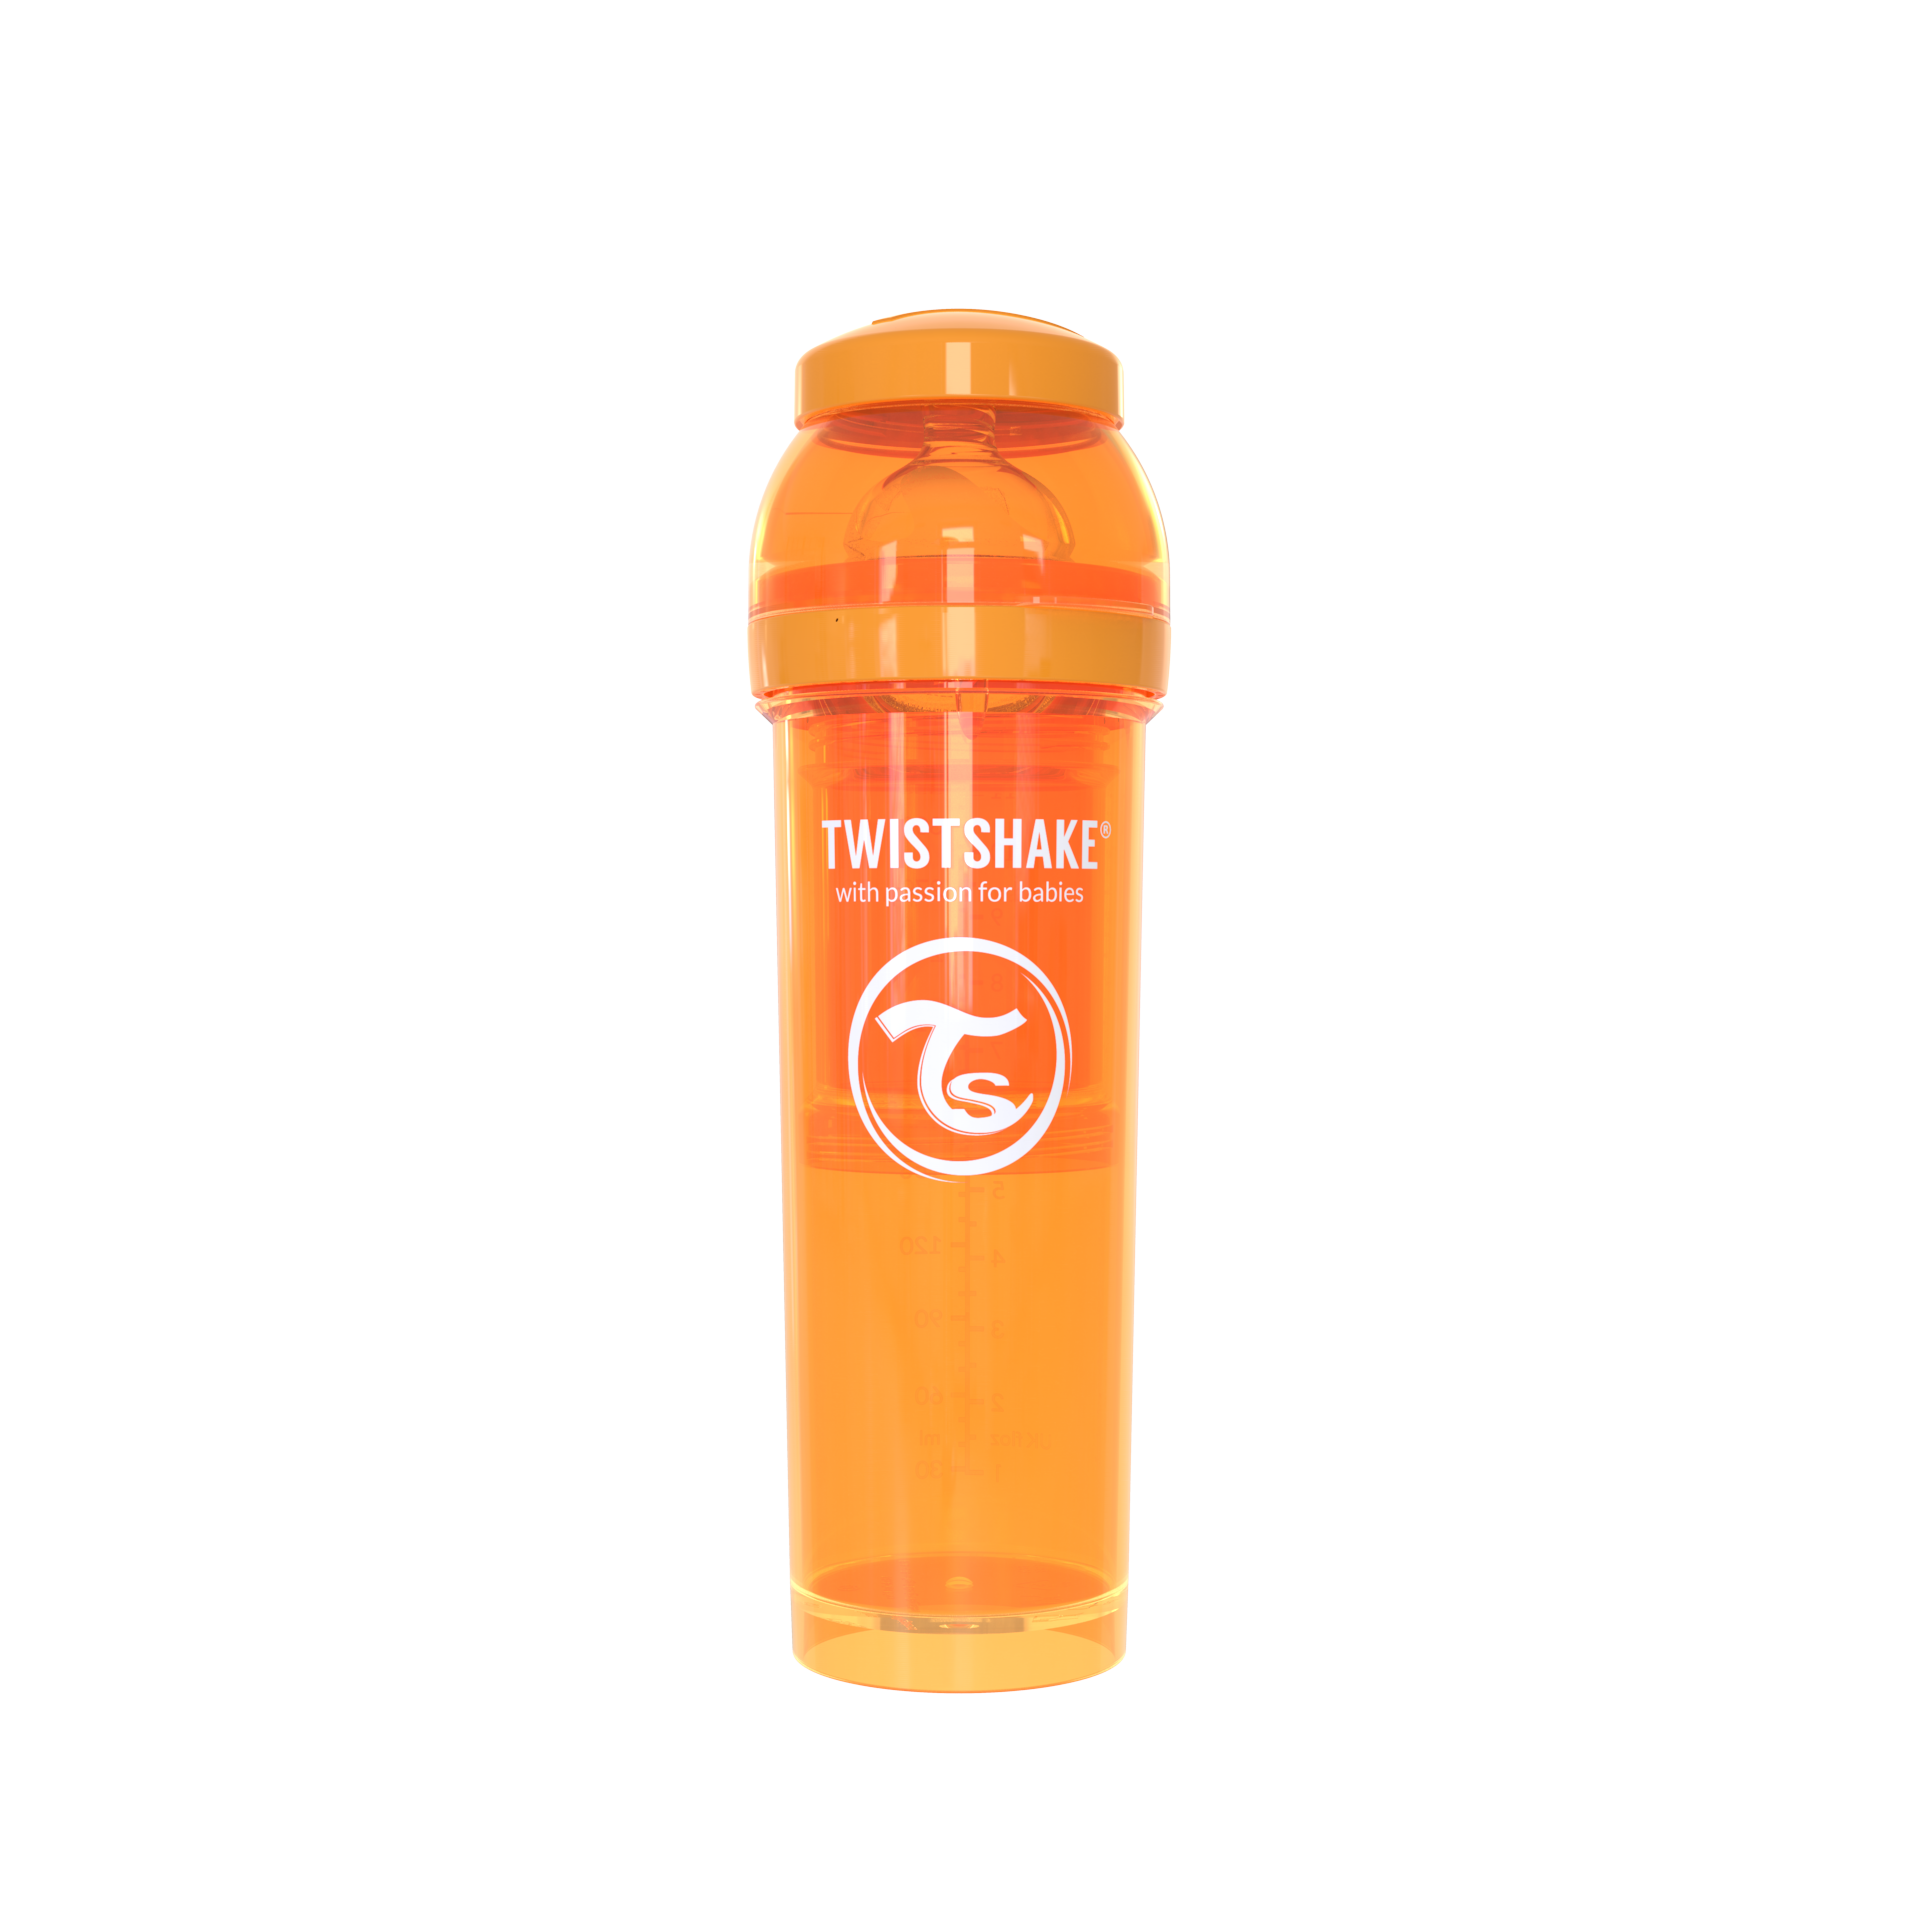 Orange 180ml Twistshake Anti-Colic Bottle